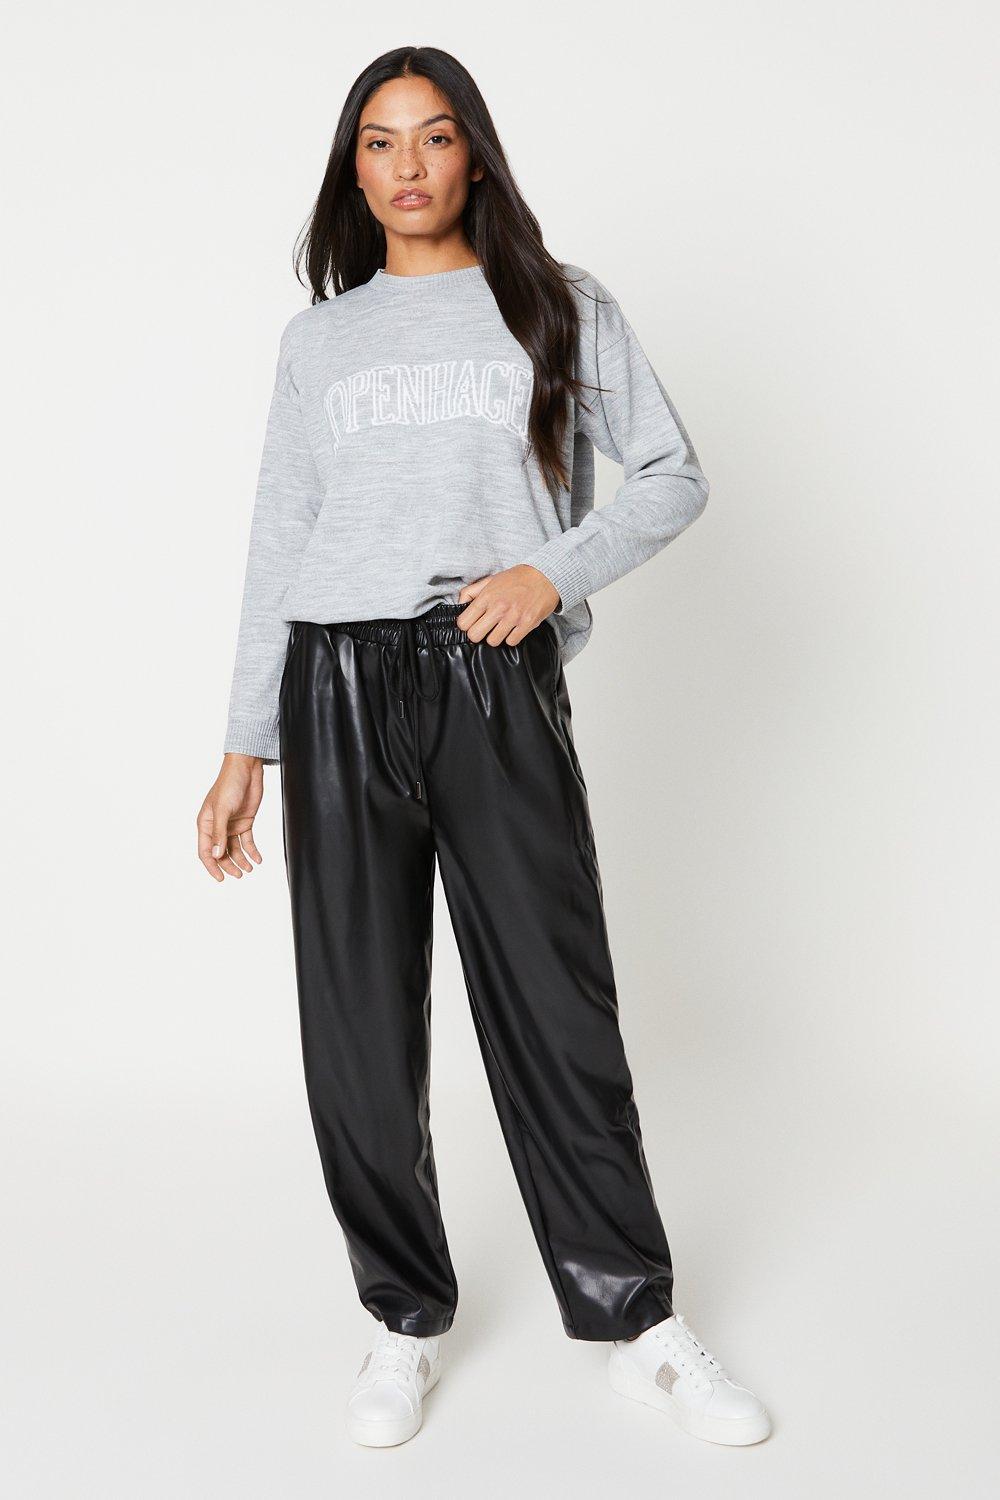 Women’s Slogan Knitted Jumper - light grey - XL